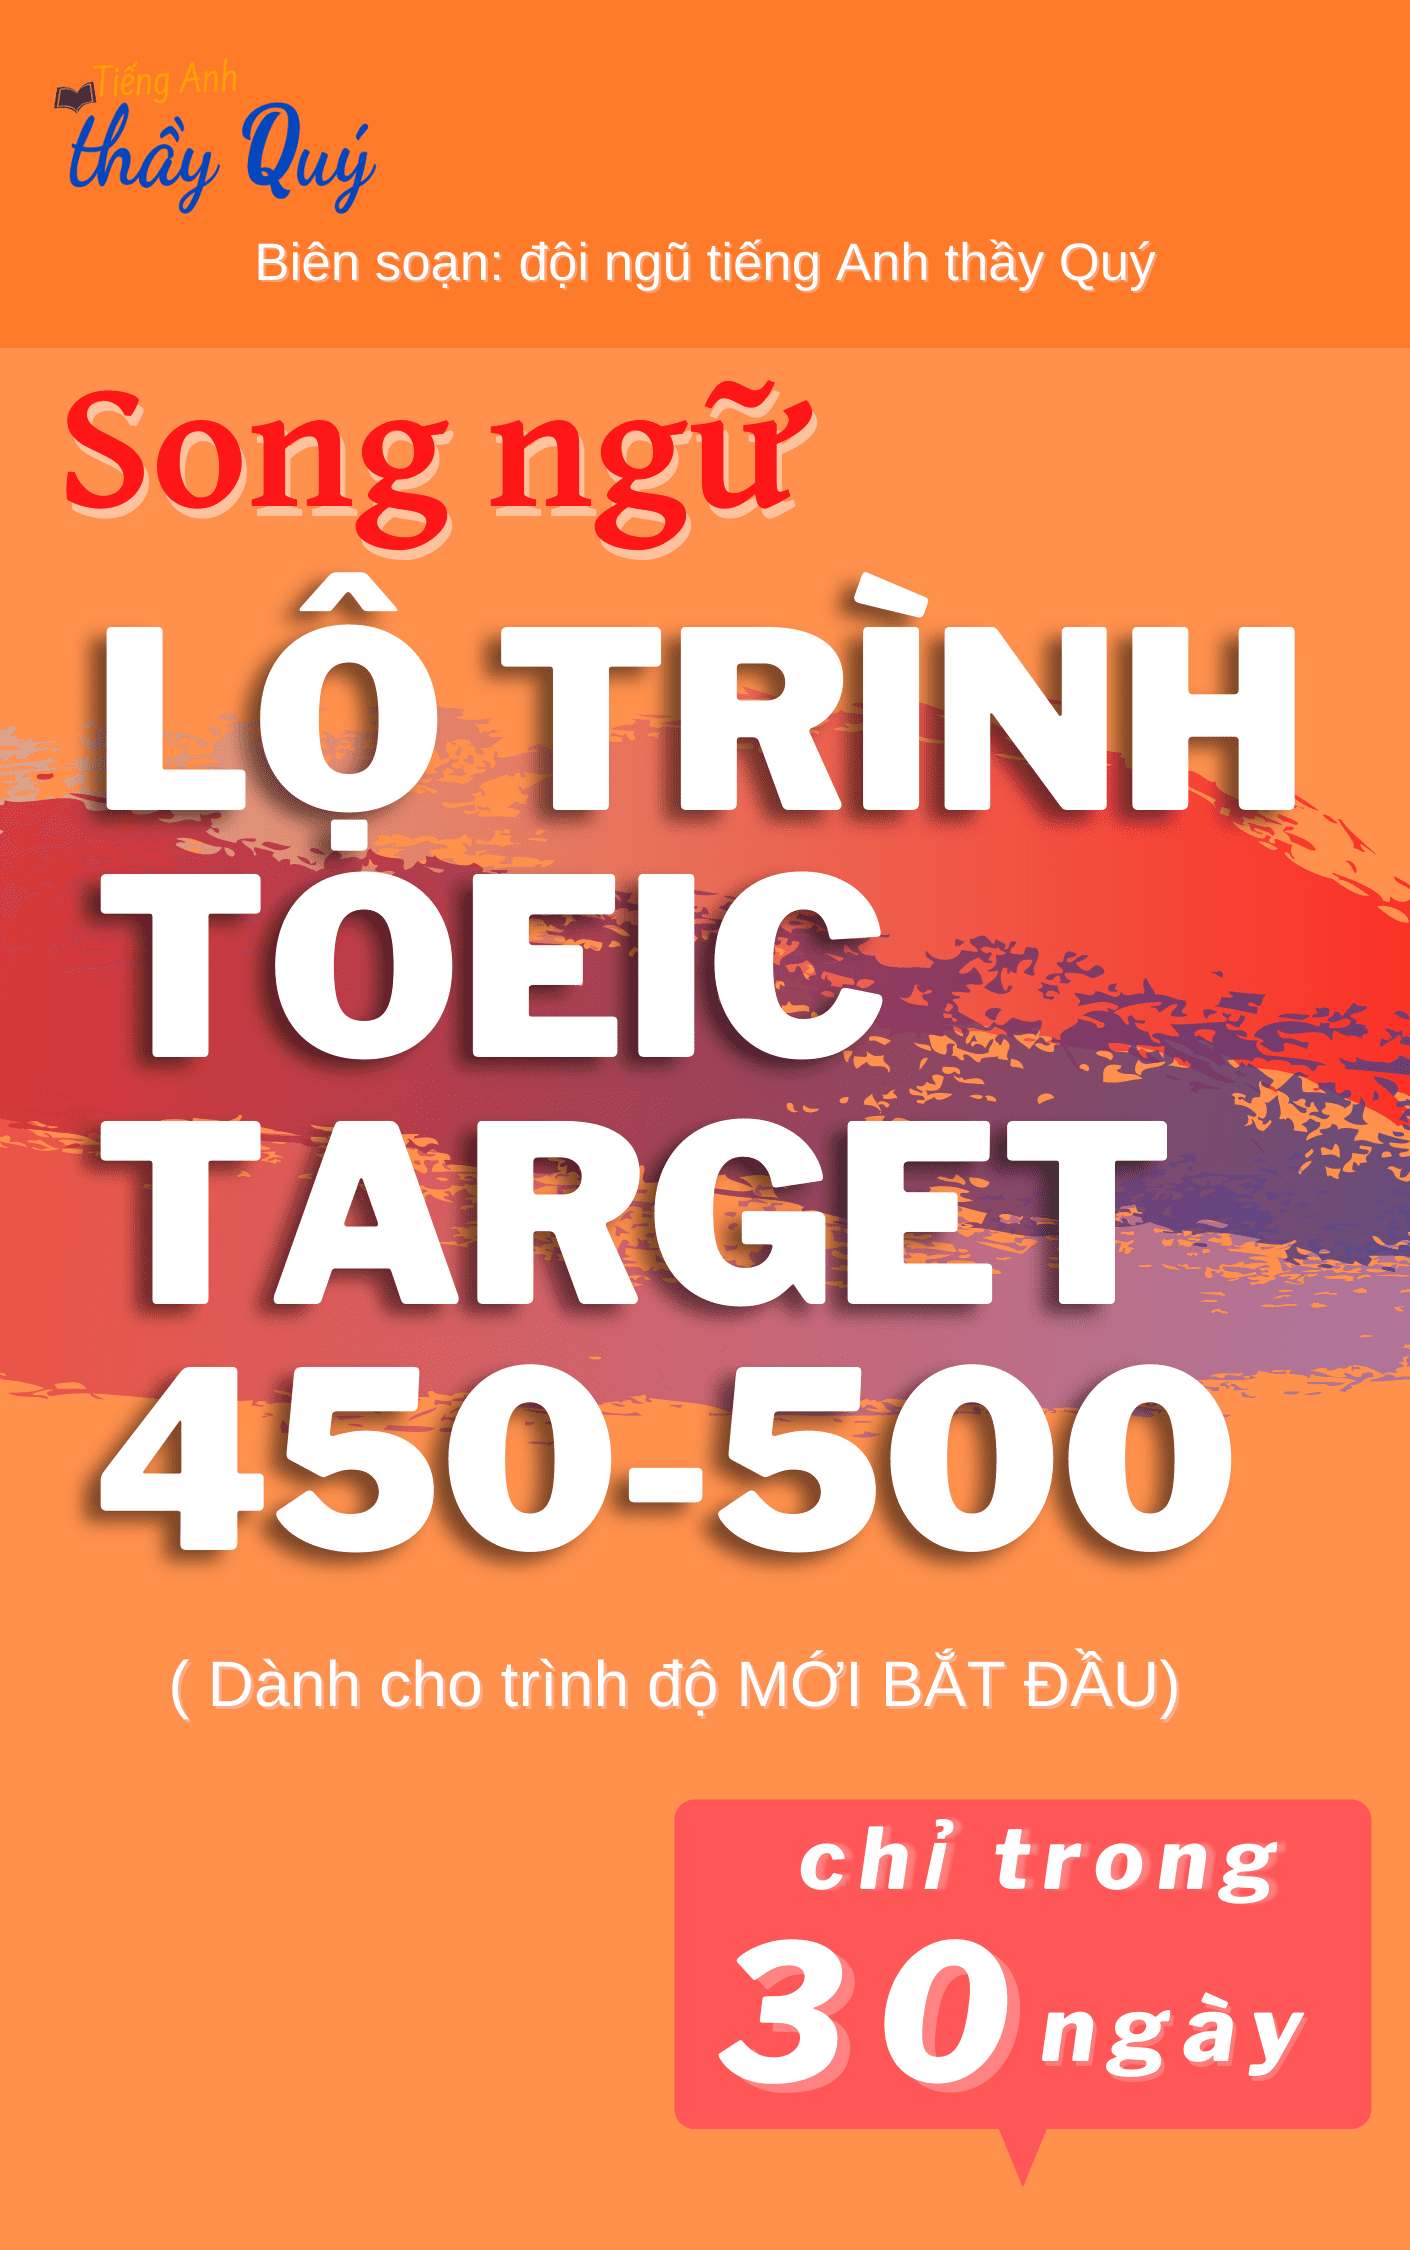 lộ trình toeic target 450-500